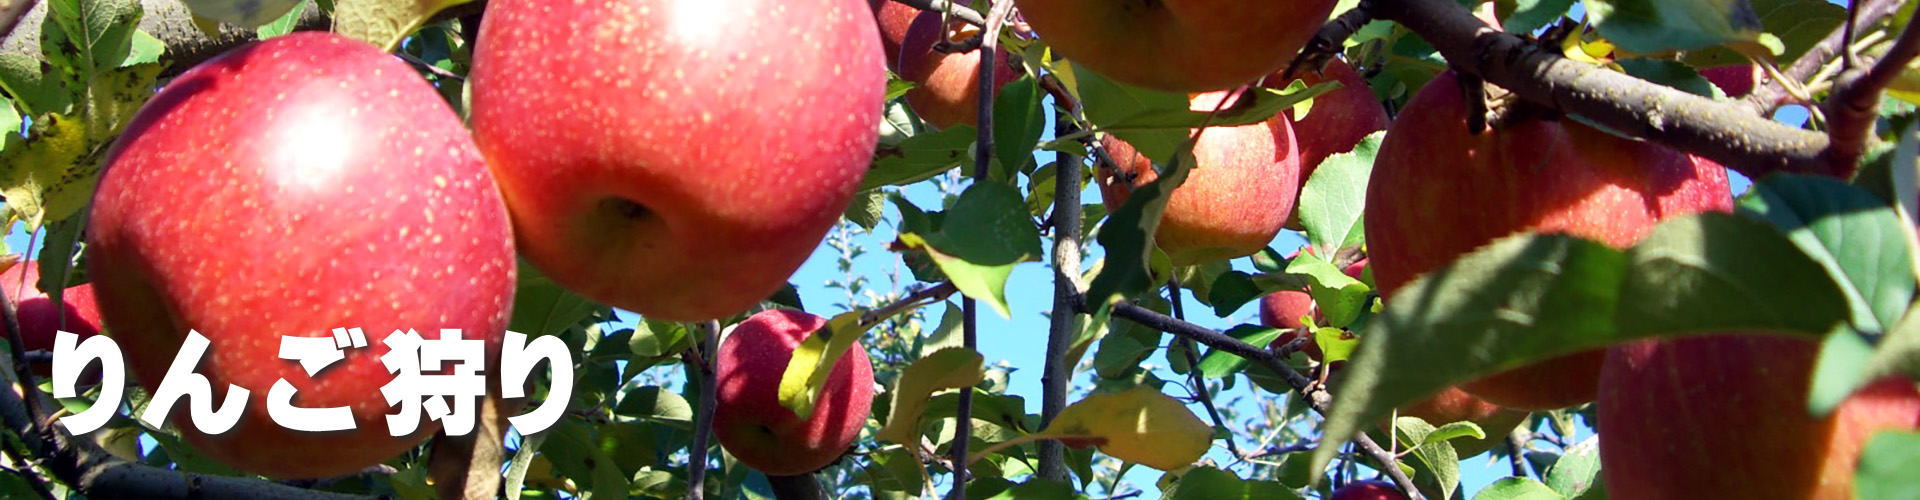 南信州柴本農園葉取らずりんごのりんご狩りのりんご狩り